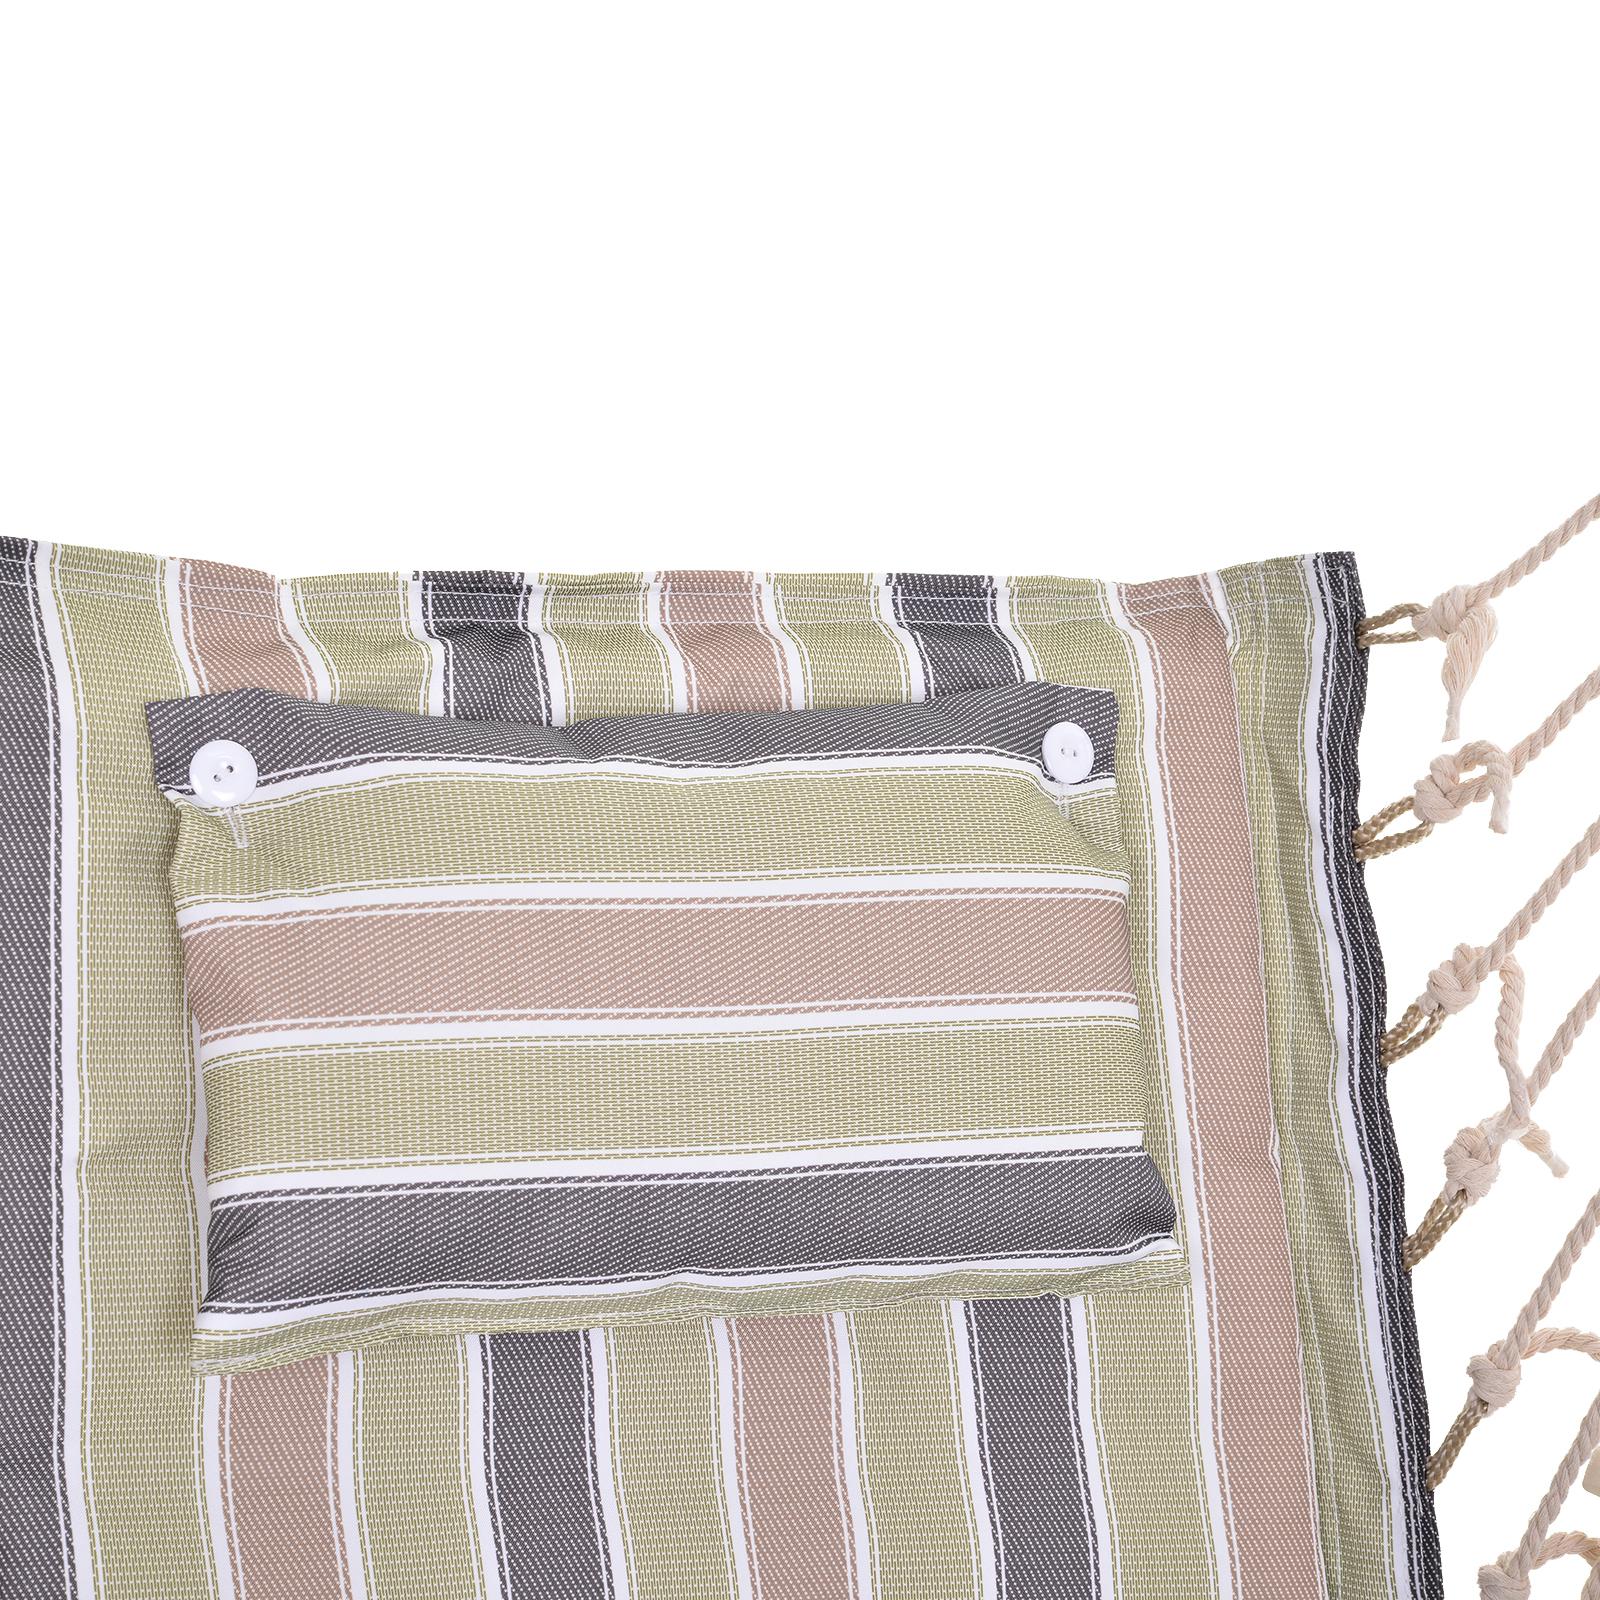 Chaise suspendue hamac de voyage respirant portable dim. 100L x 49l x 106H cm coton macramé polyester multicolore rayé